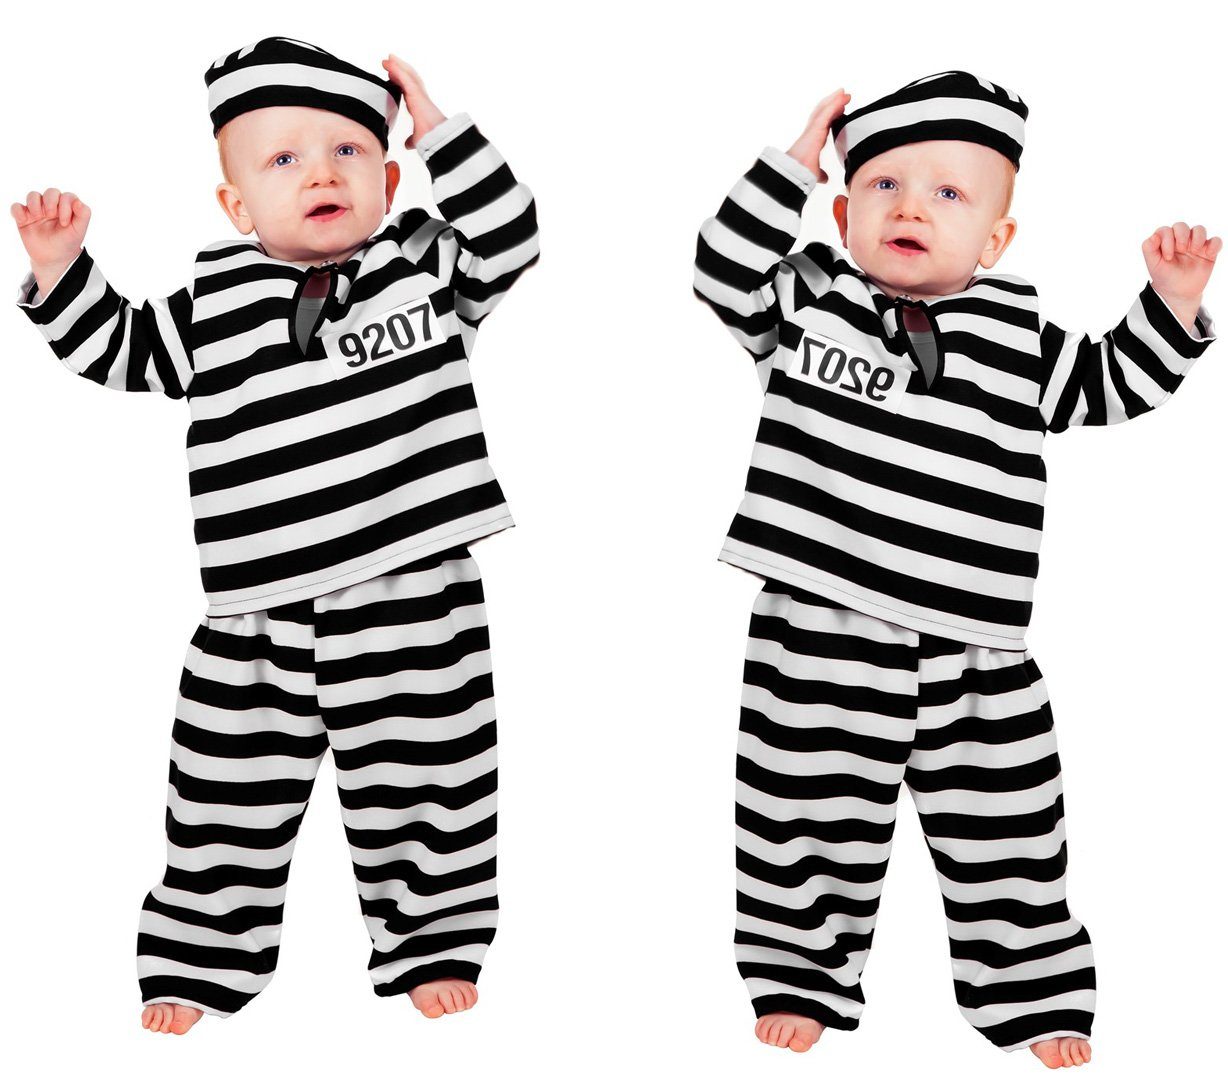 Wilbers Kostüm »Wilbers Kinderkostüm Baby Sträfling Gr. 86- 92 cm  -Babykostüm Gefangener« online kaufen | OTTO